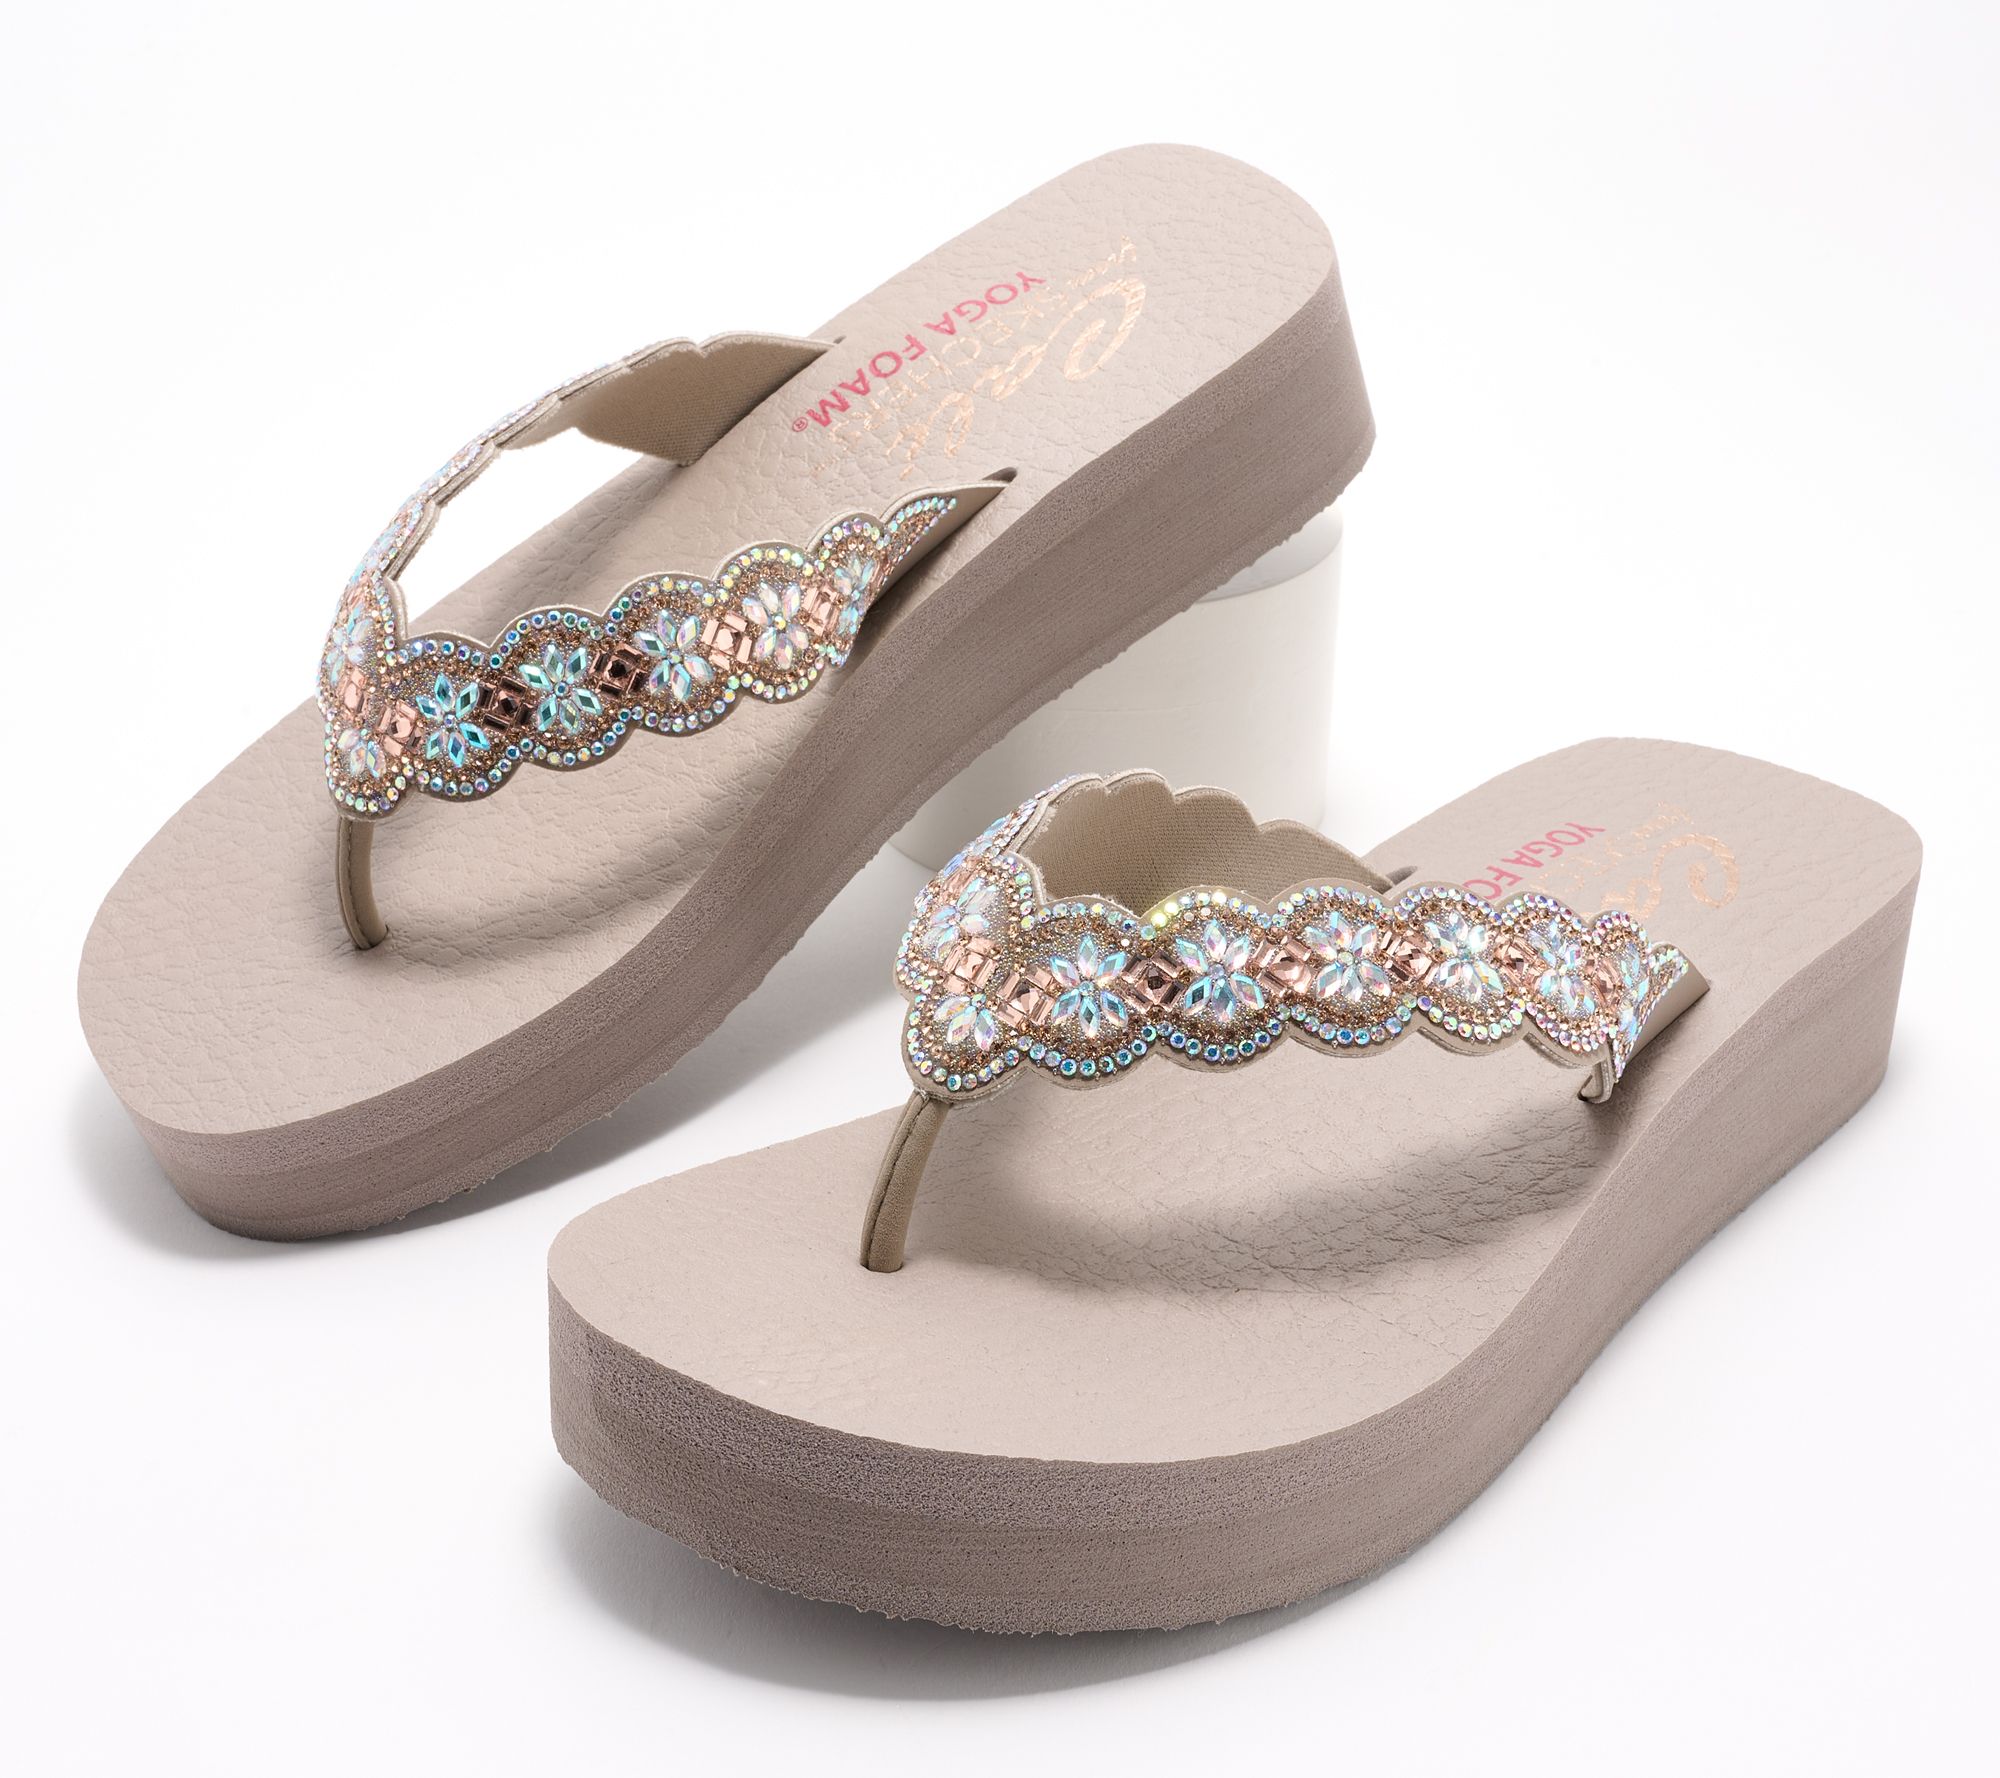 Skechers Vinyasa Floral Embellished Thong Sandals - Happy Spring -